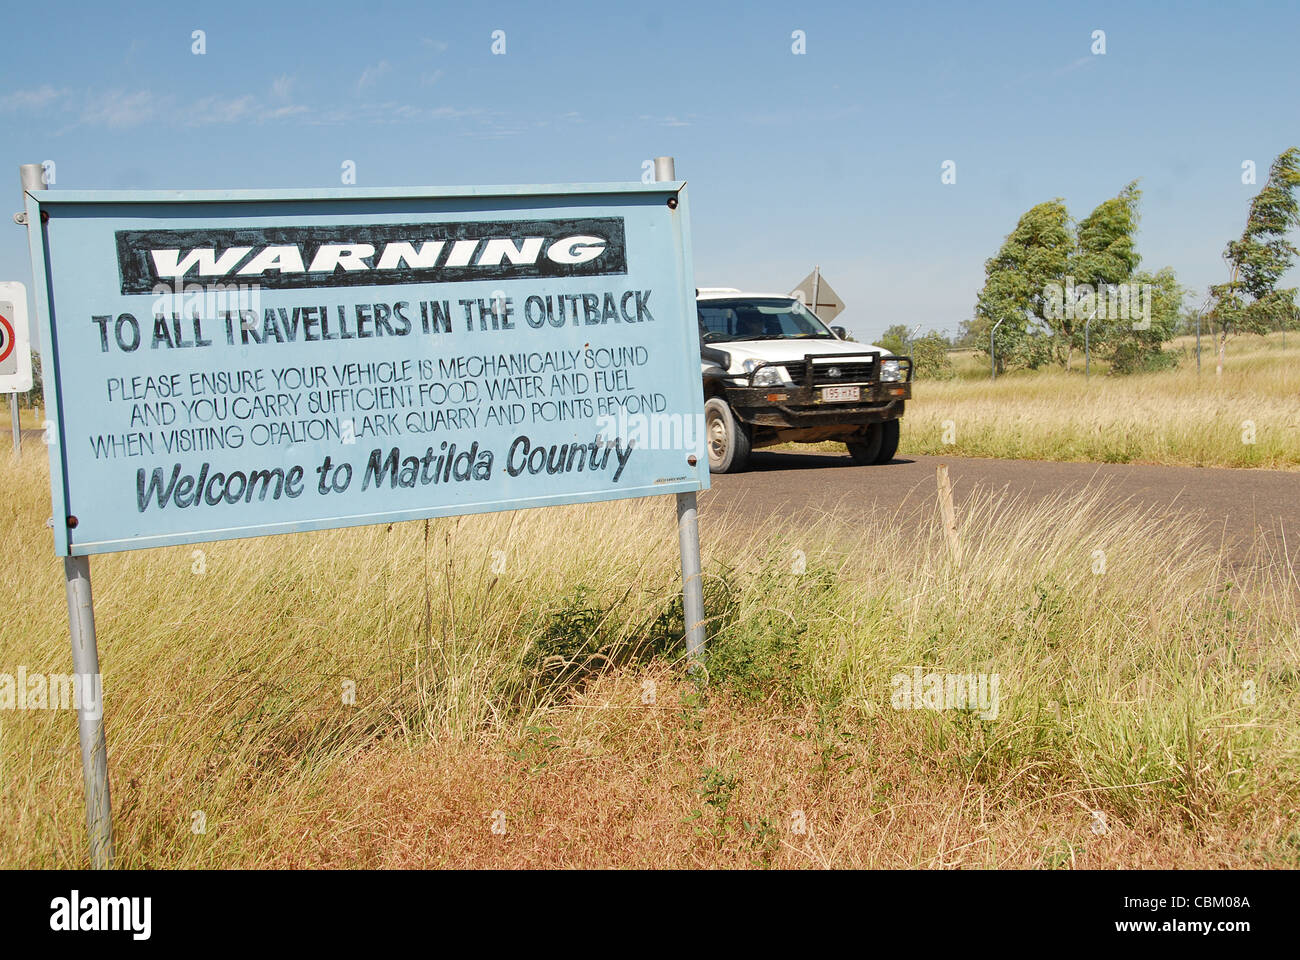 Signe de route au début de la route en Winton-Jundah met en garde les voyageurs de Winton le risque dans l'Outback de l'Australie Banque D'Images